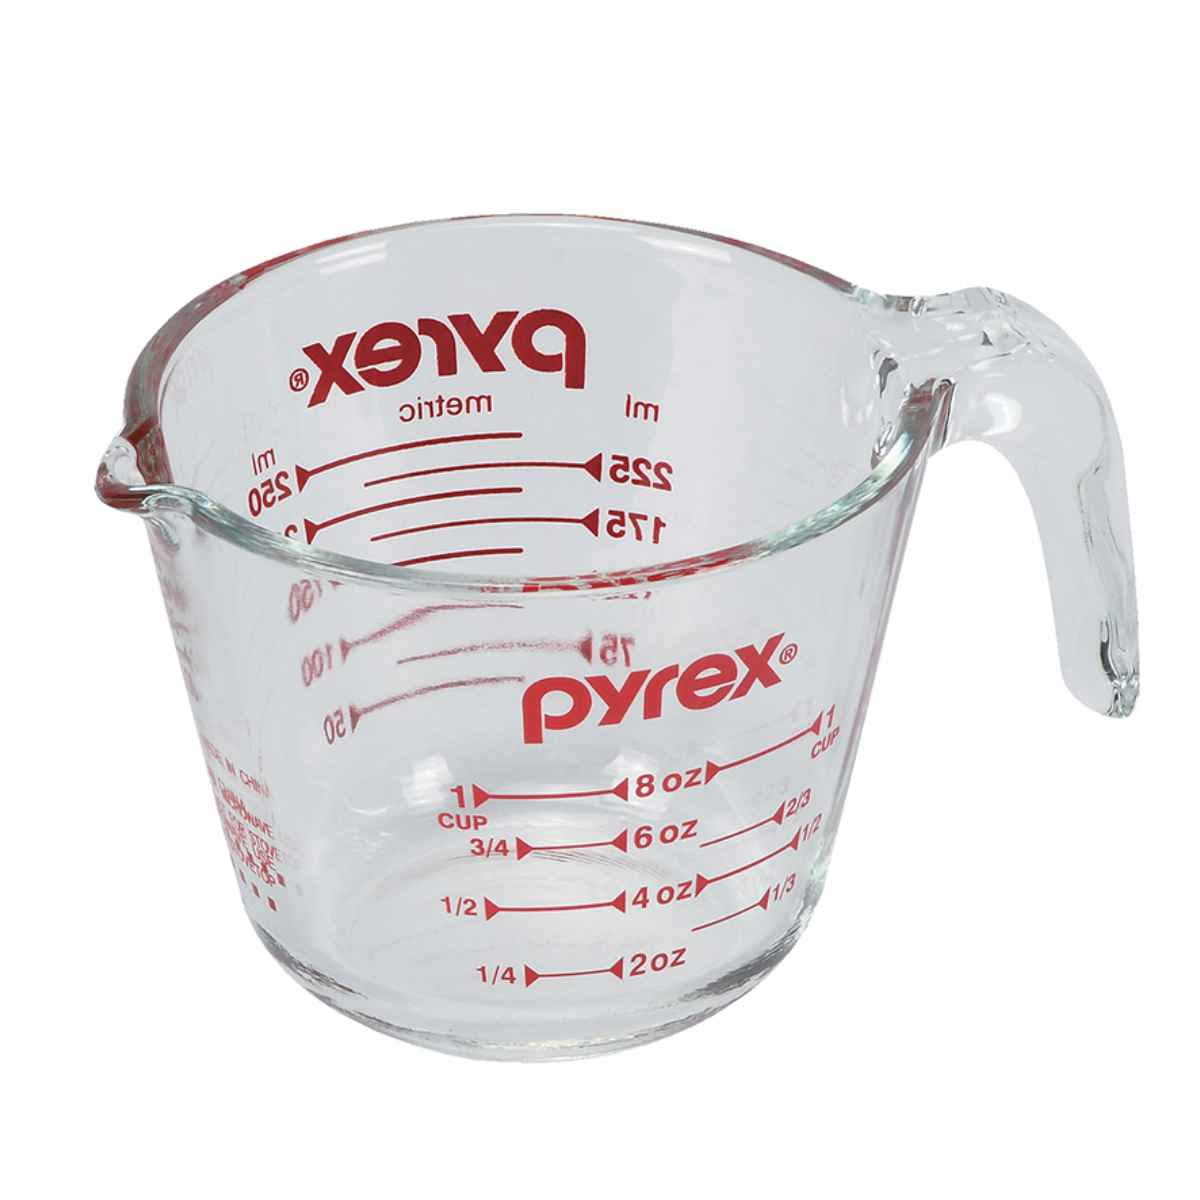 上質で快適 PYREX 計量カップ 1L 耐熱ガラス 取っ手付き メジャー